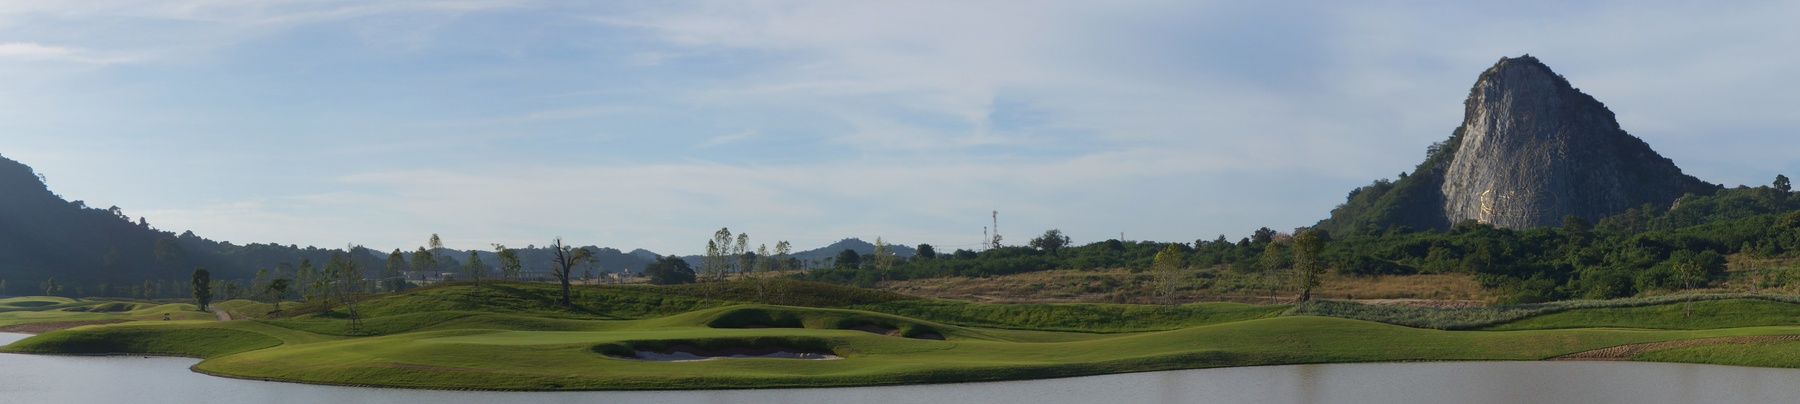 Chee Chang Golf Resort2